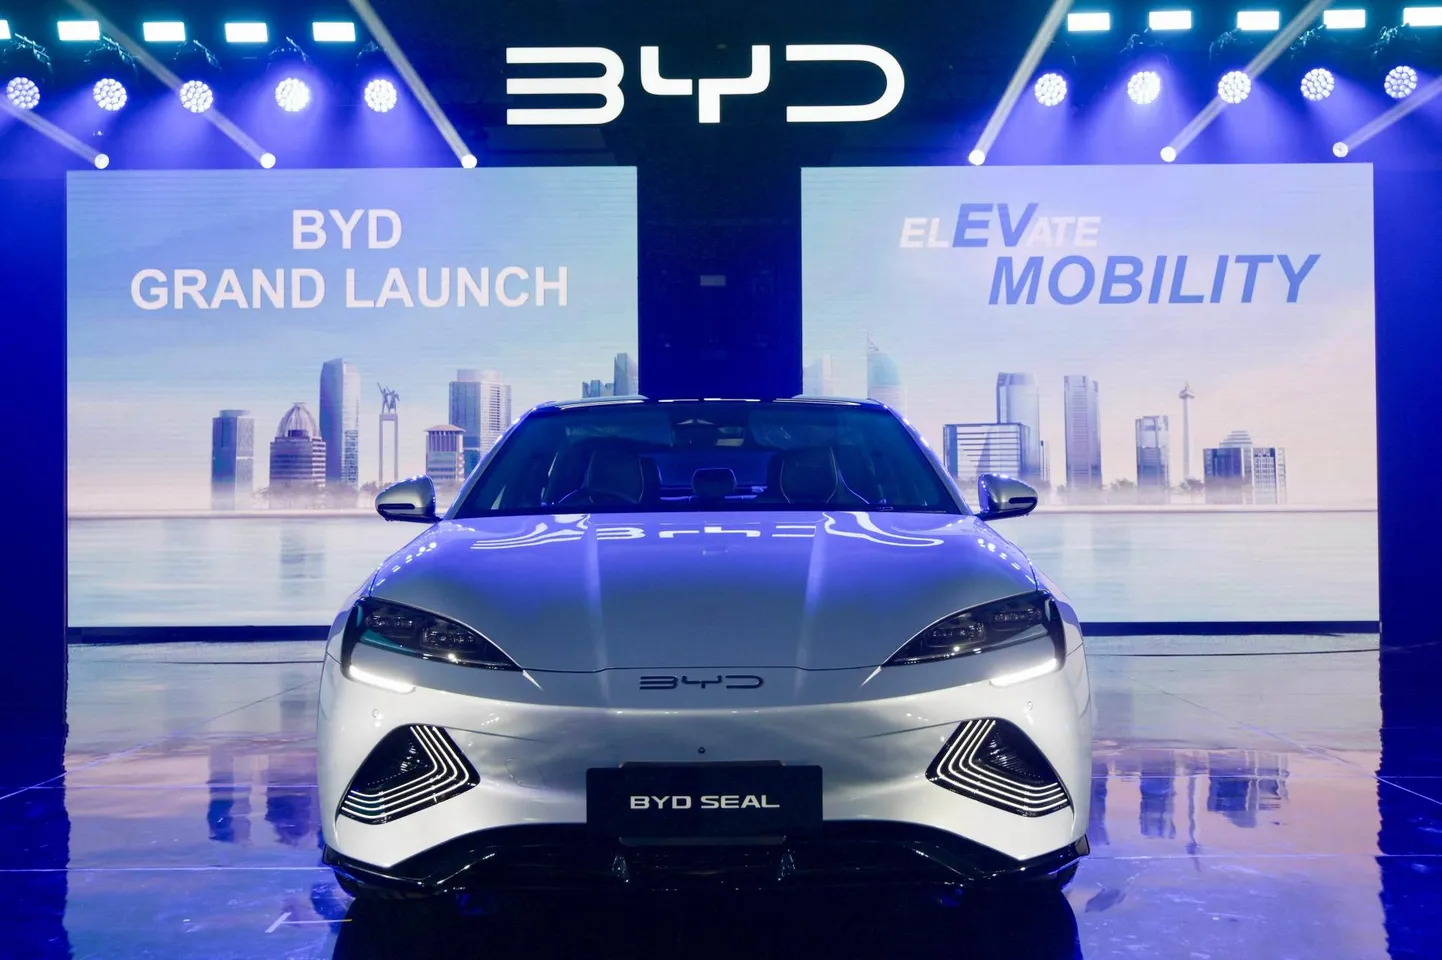 Hiina BYD möödus Teslast ning tõusnud maailma suurimaks elektriautode tootjaks, ka Eestisse on jõudnud müüki BYD mudelid.